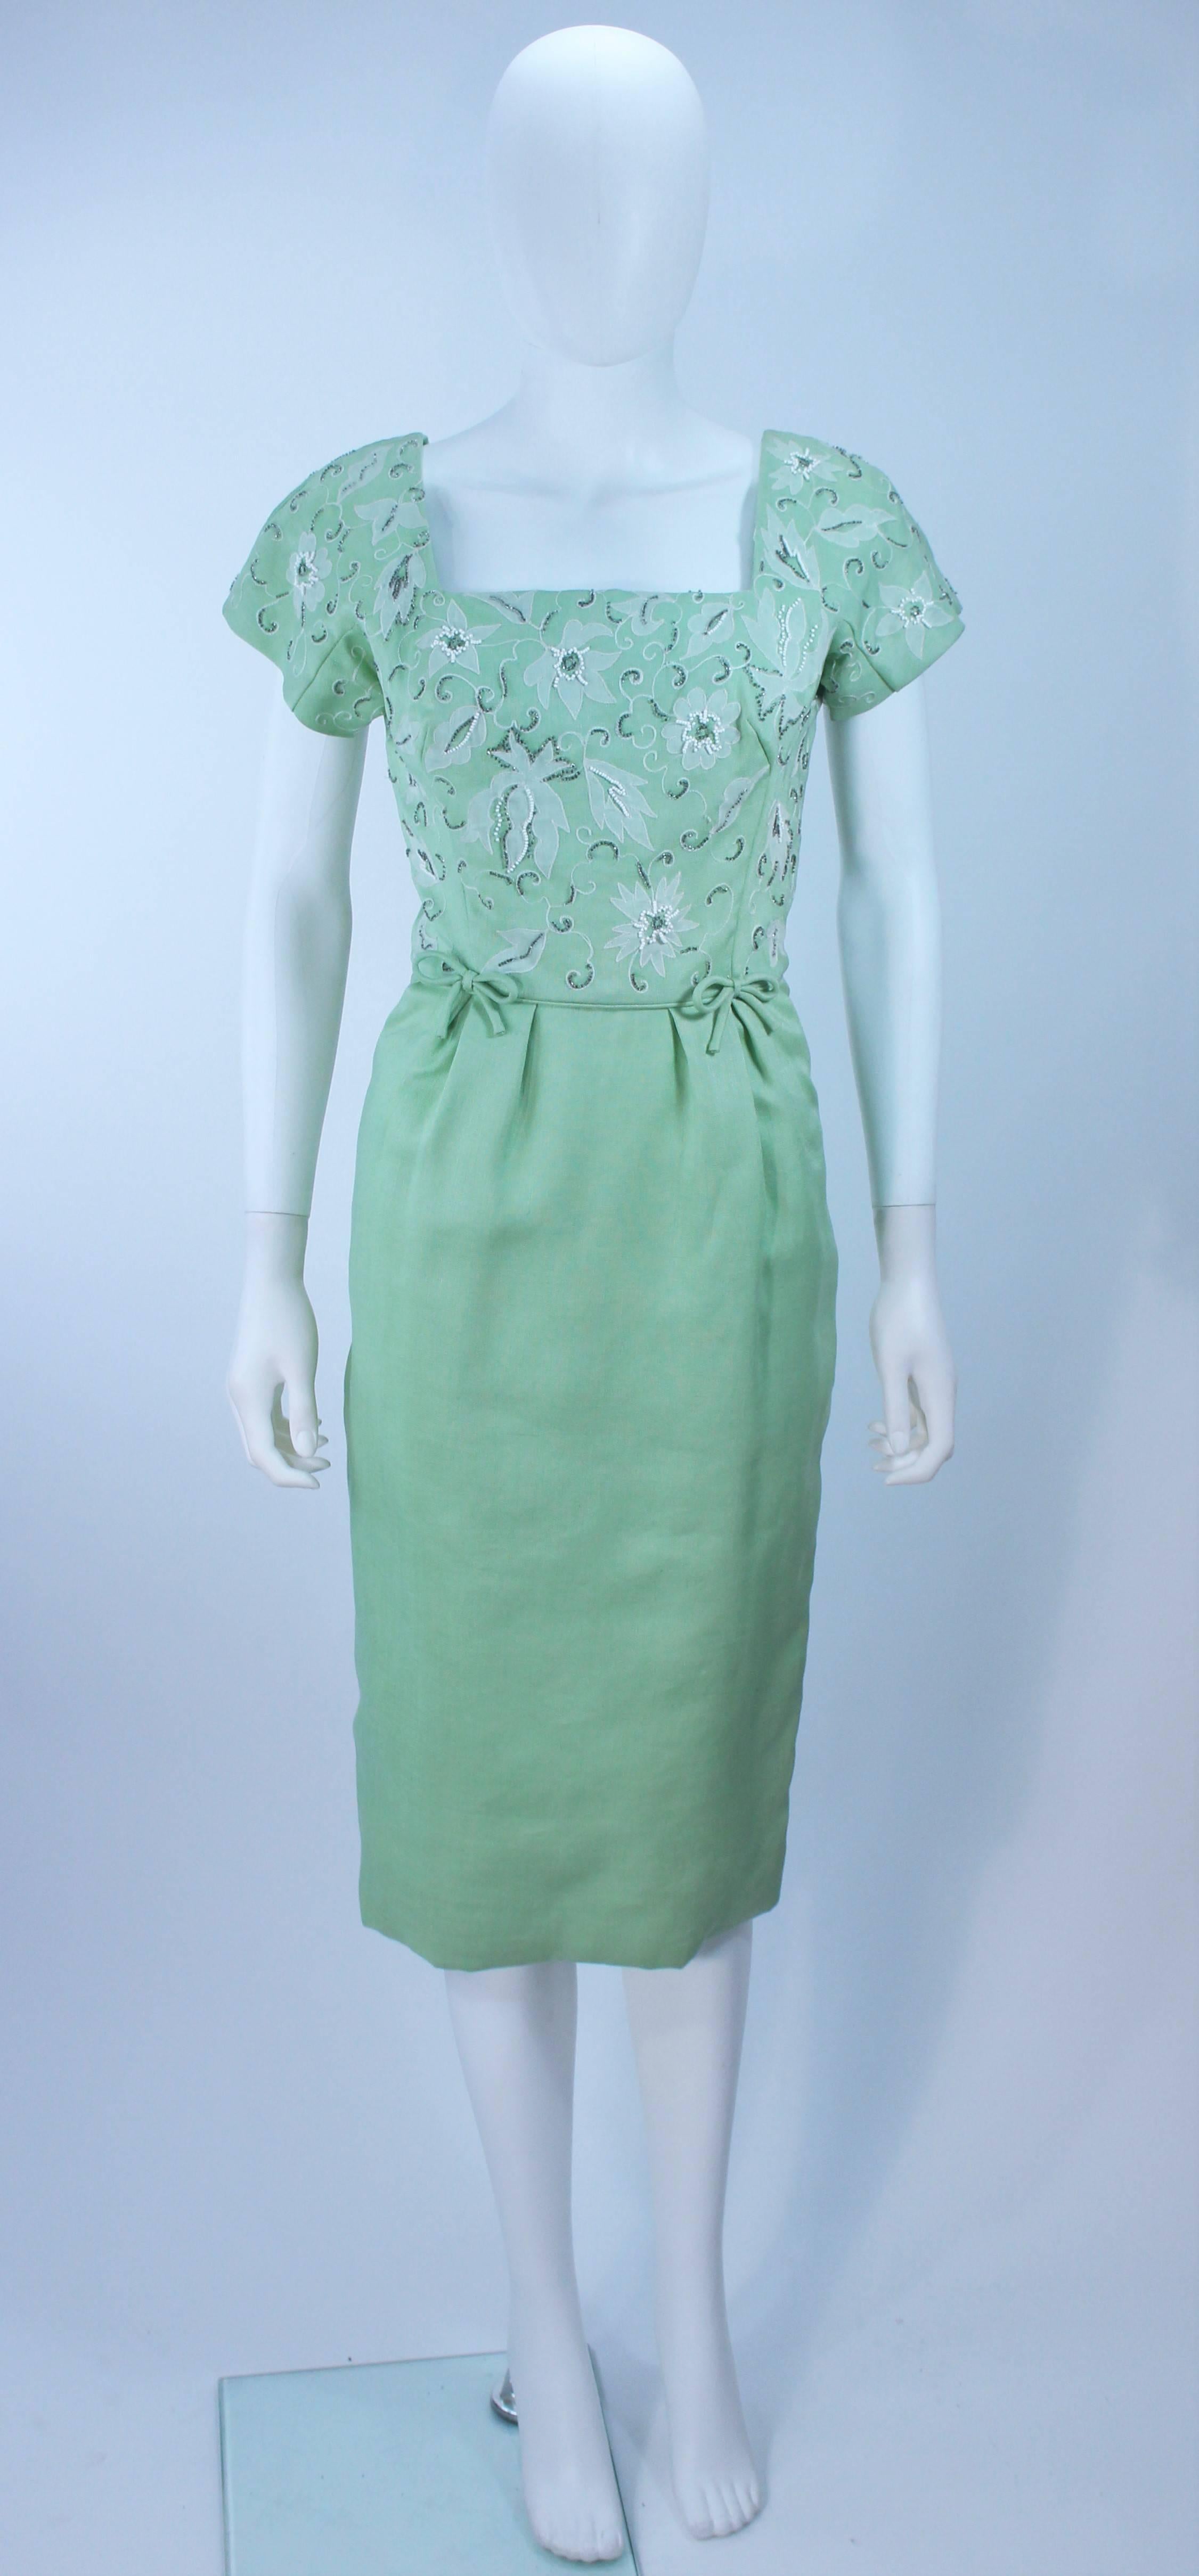  Dieses Kleid besteht aus salbeigrüner Seide oder Leinen mit weißen Stickereien und Perlen. Der Ausschnitt ist mit einer Wellenkante verziert, die Vorderseite ist mit einer Schleife verziert und der Reißverschluss wird hinten in der Mitte